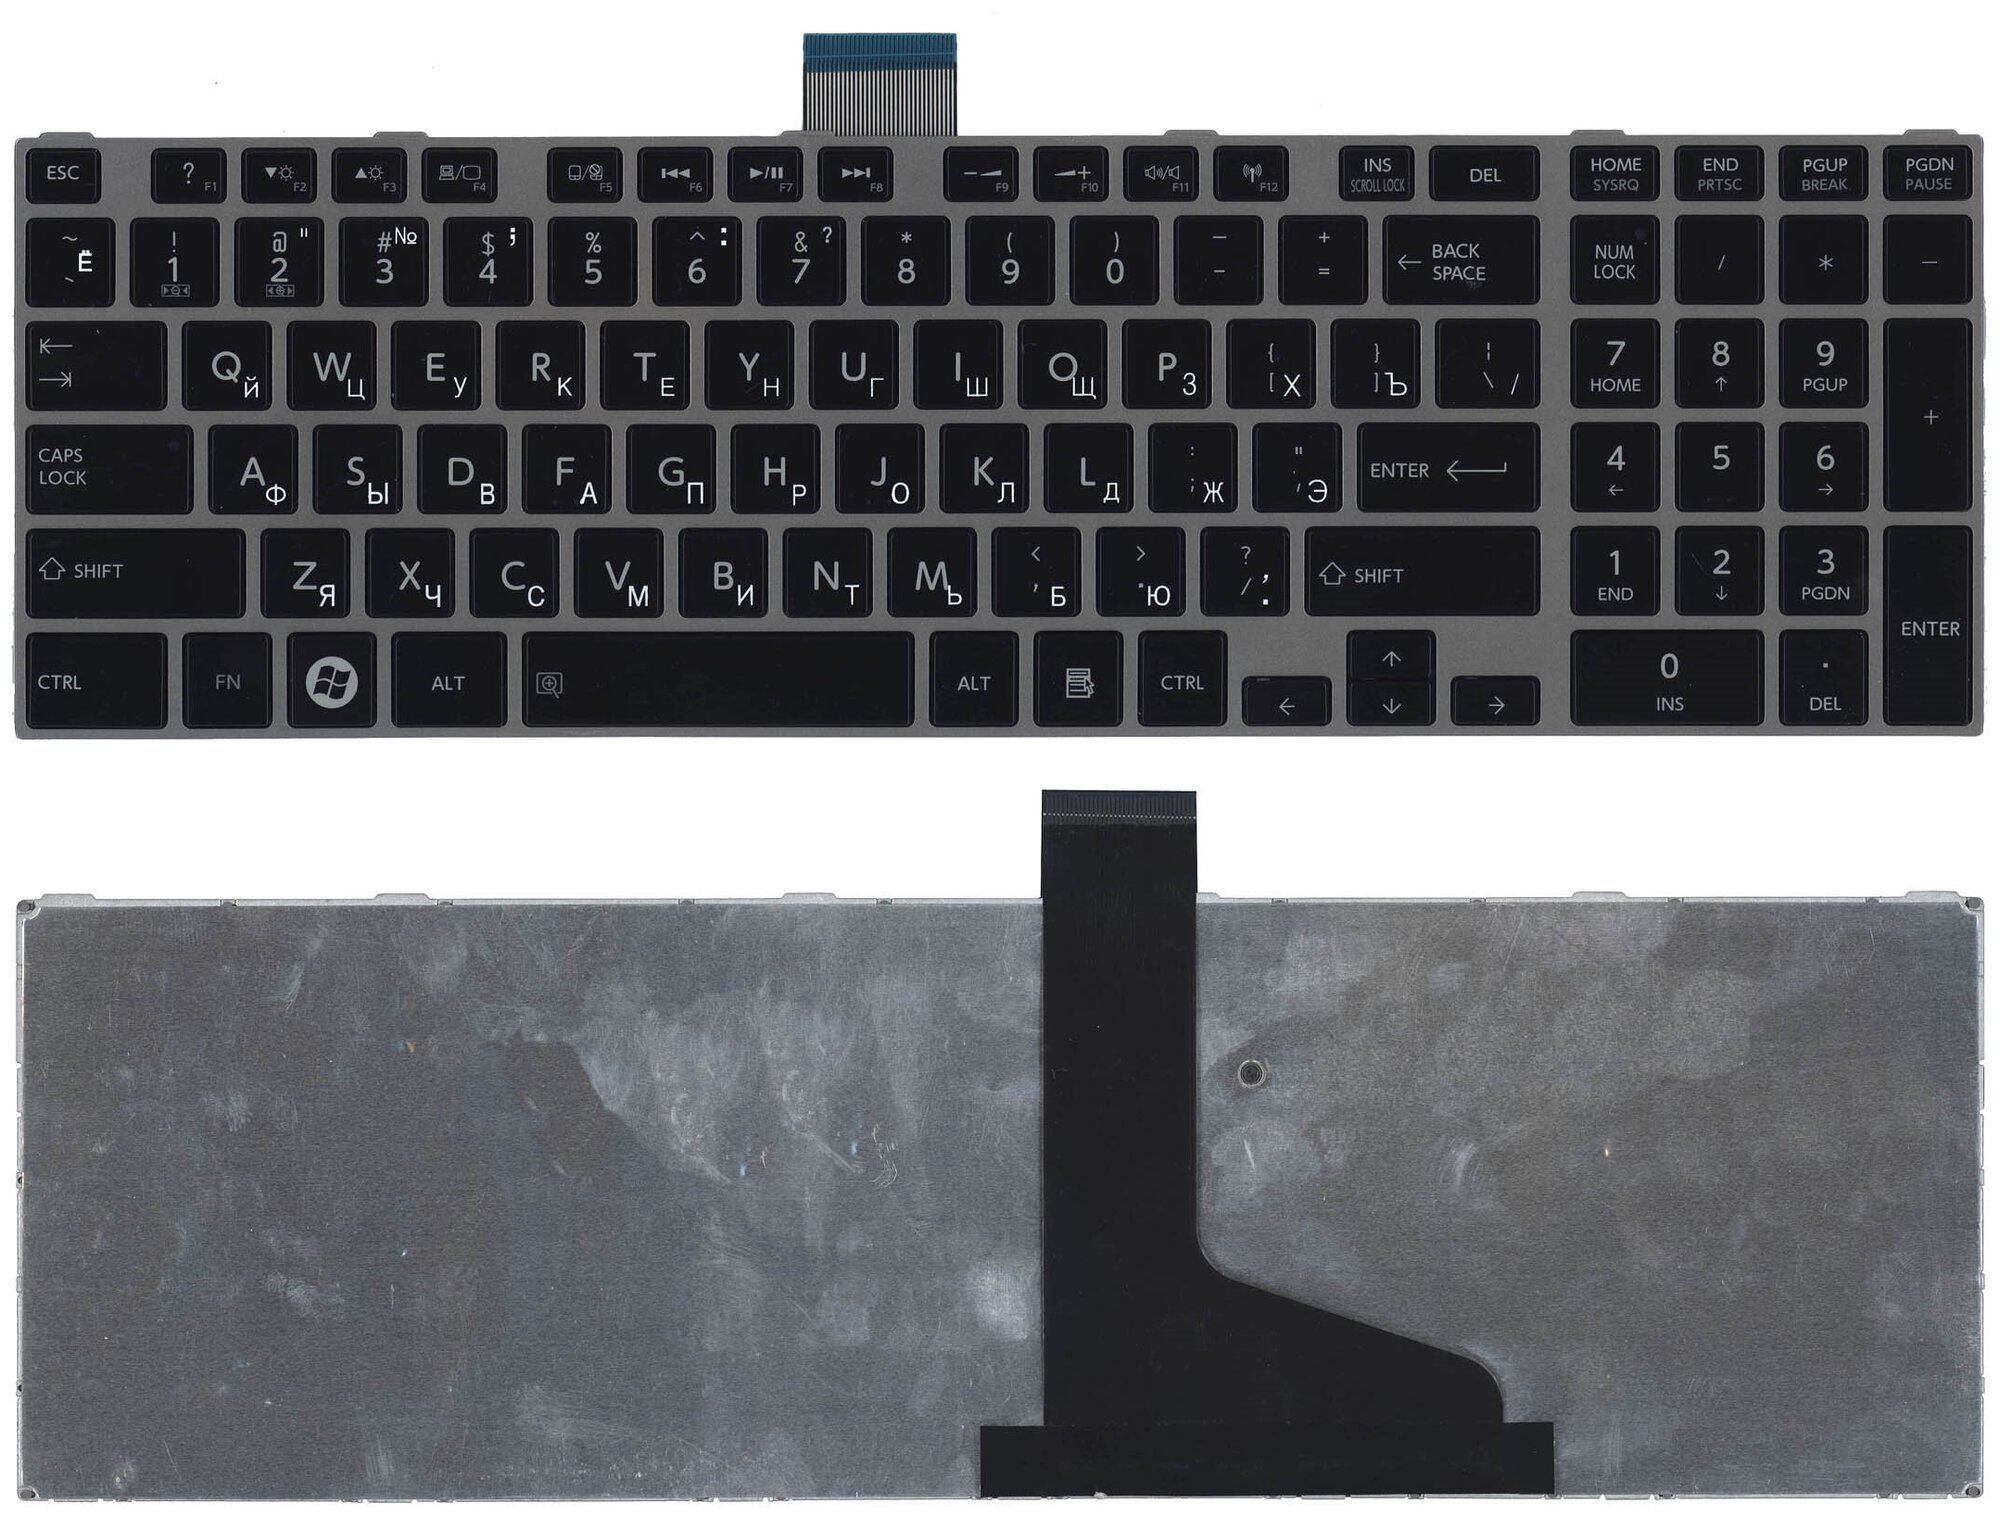 Клавиатура для ноутбука Toshiba Satellite L850 L875 L870 L855 черная c серебристой рамкой